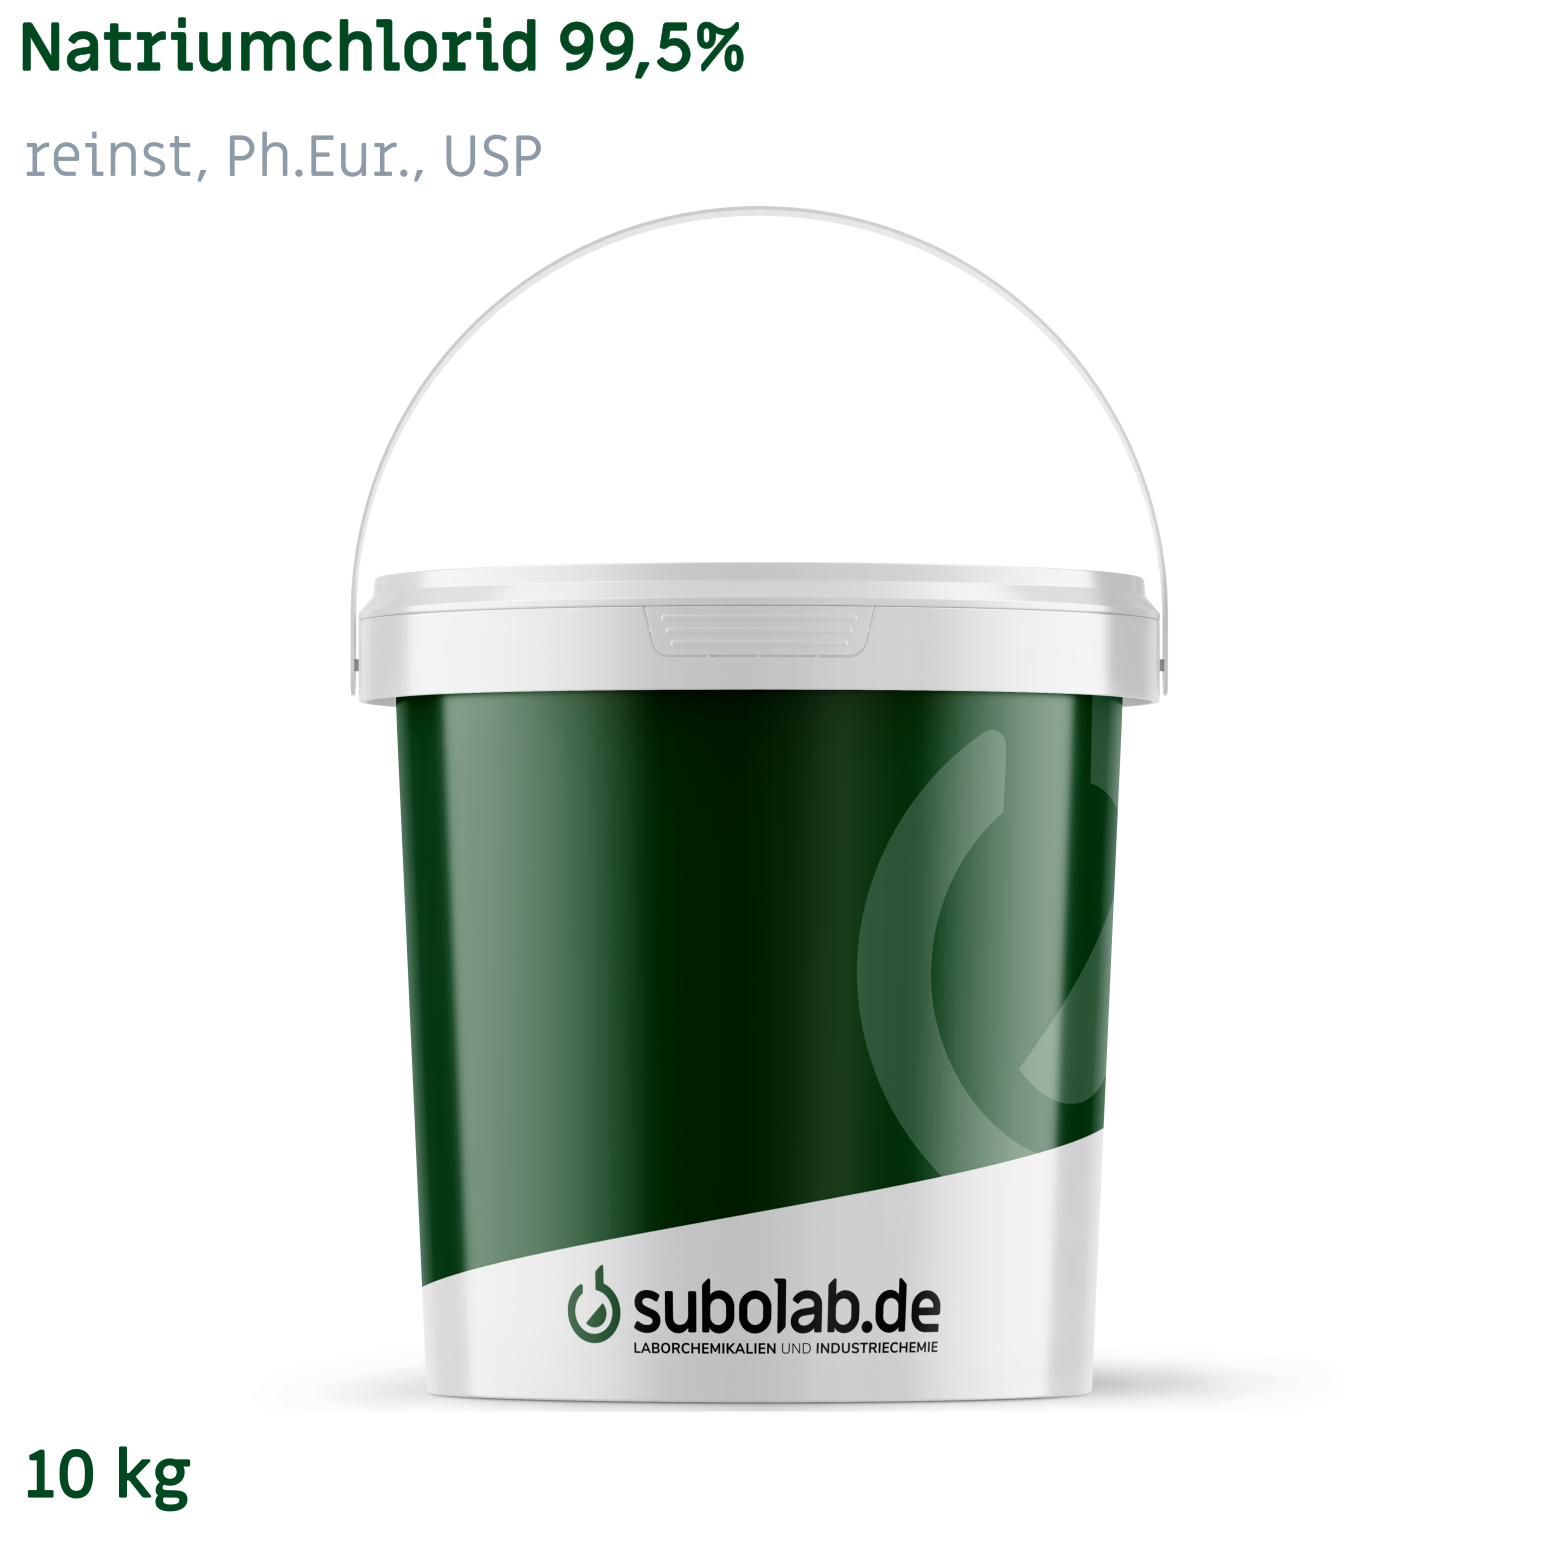 Bild von Natriumchlorid 99,5% reinst, Ph.Eur., USP (10 kg)